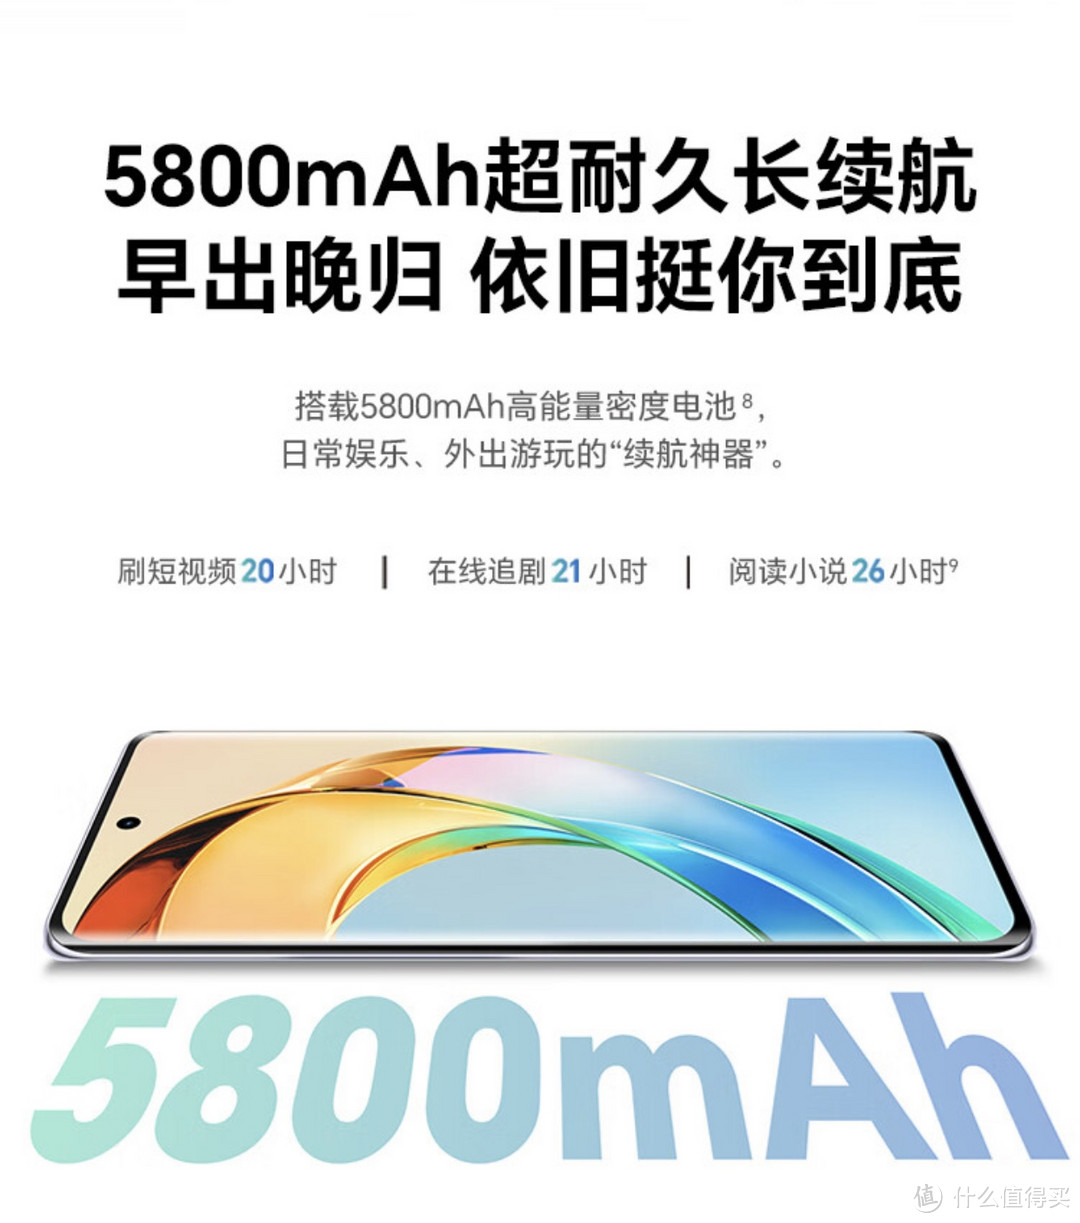 ￼￼荣耀X50 第一代骁龙6芯片 1.5K超清护眼硬核曲屏 5800mAh超耐久大电池 5G手机 8GB+128GB 典雅黑￼￼